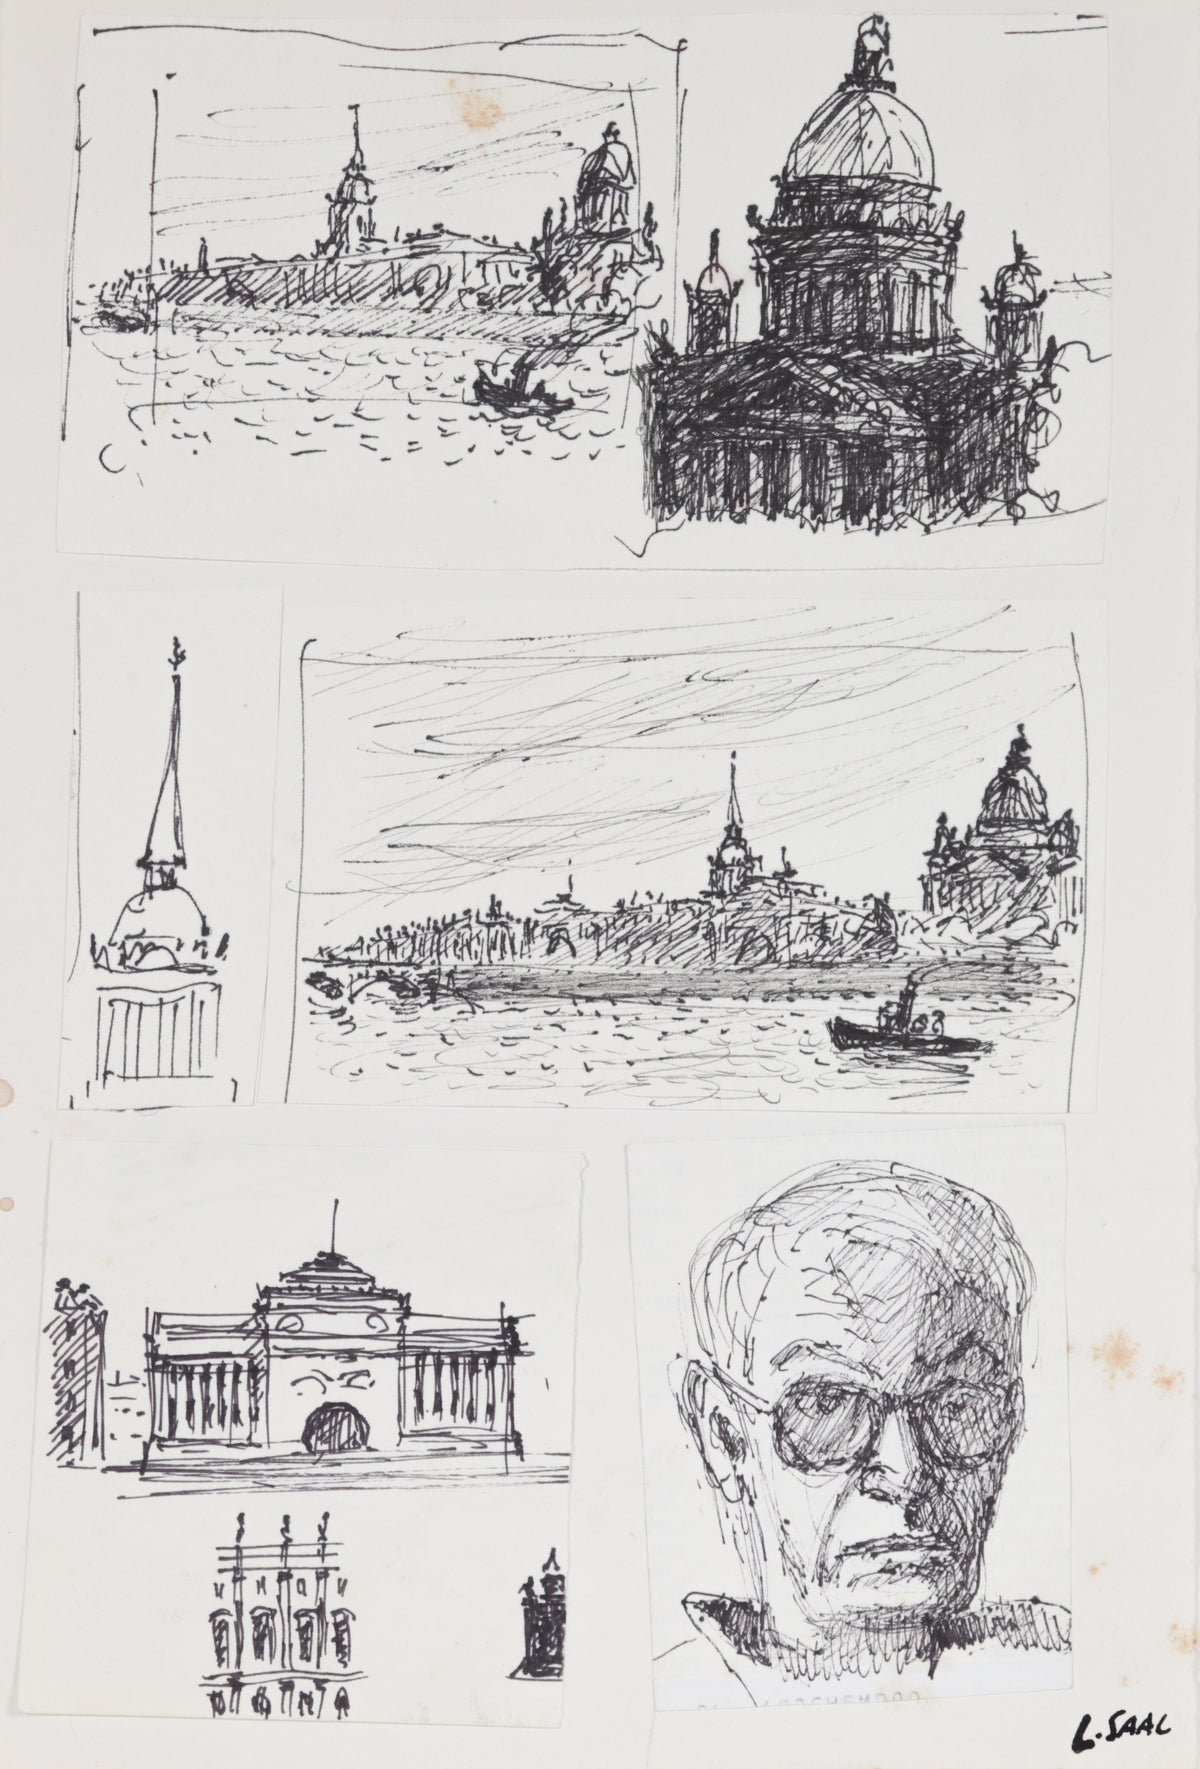 &lt;I&gt;St. Petersburg&lt;/I&gt; &lt;br&gt;1986 Ink&lt;br&gt;&lt;br&gt;#C1428